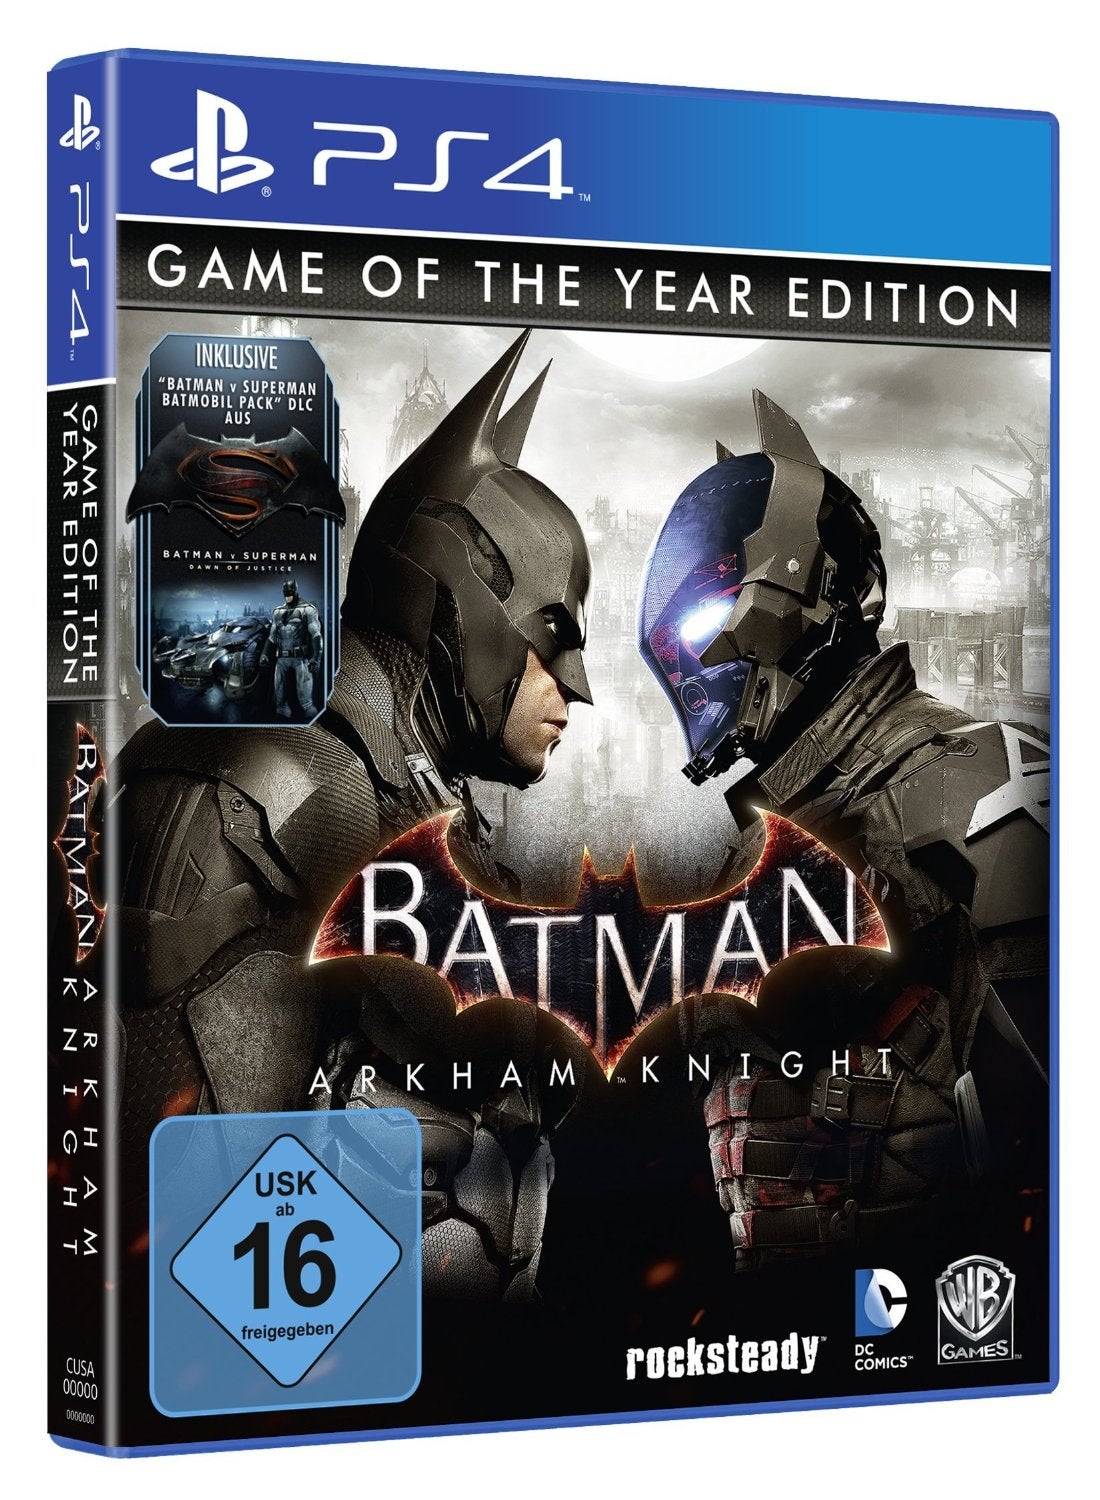 Batman: Arkham Knight Goty Edition Pops Up On Amazon Germany | Vg247